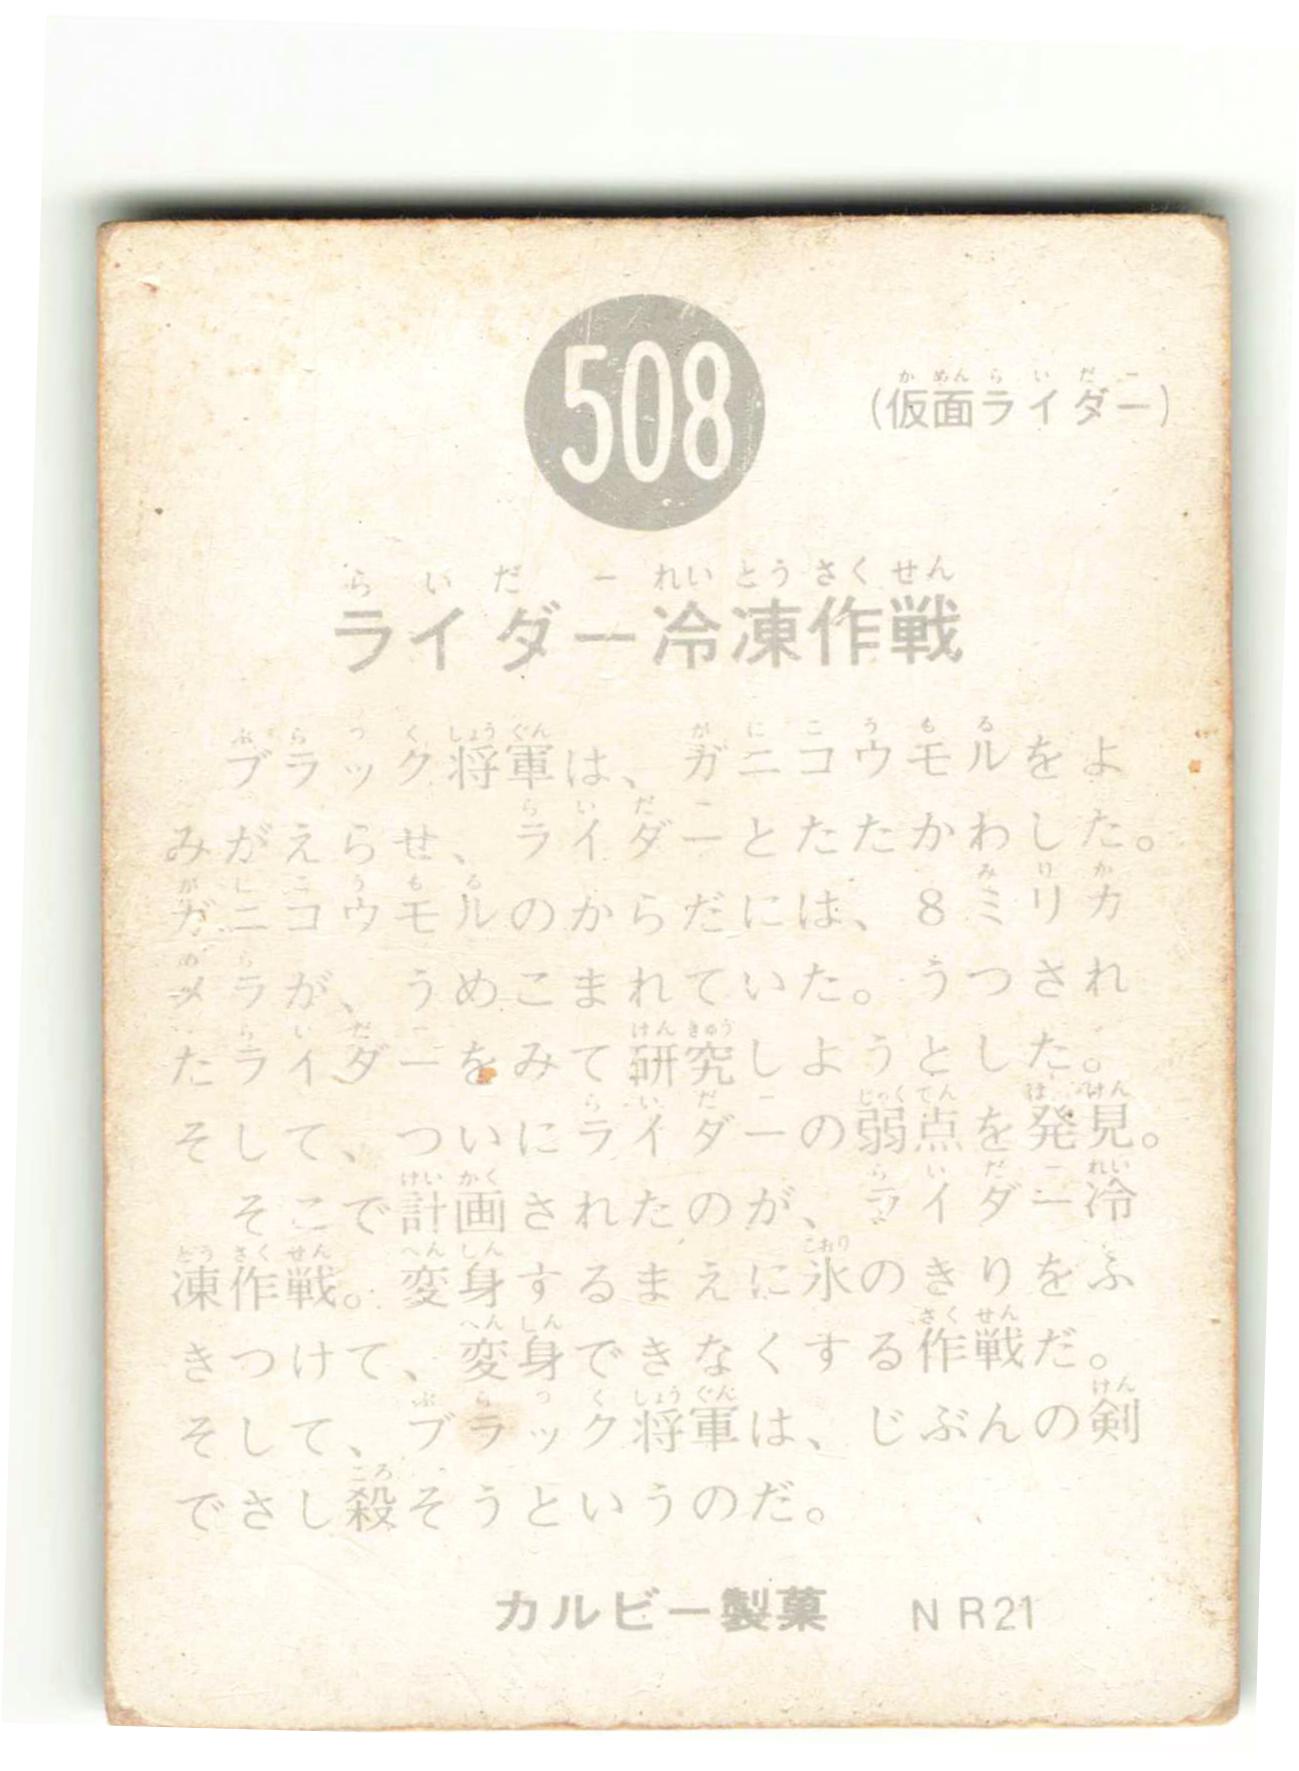 当時物 カルビー仮面ライダーチップス 508番 ライダー冷凍作戦 -